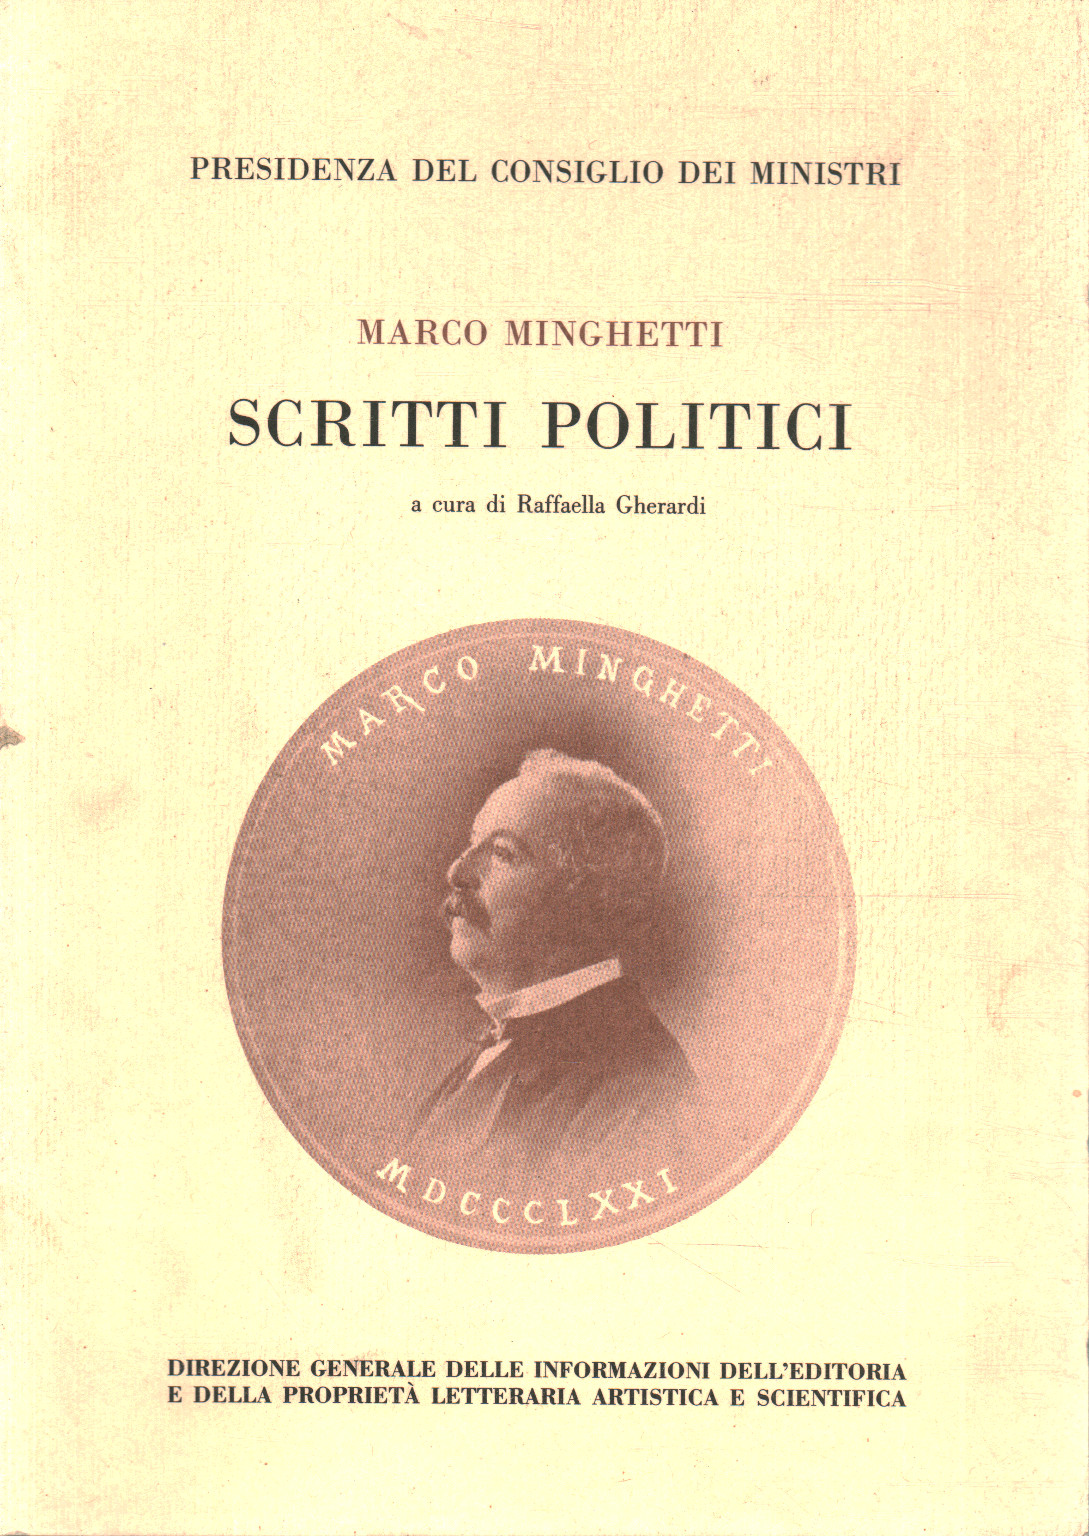 Scritti politici, Marco Minghetti